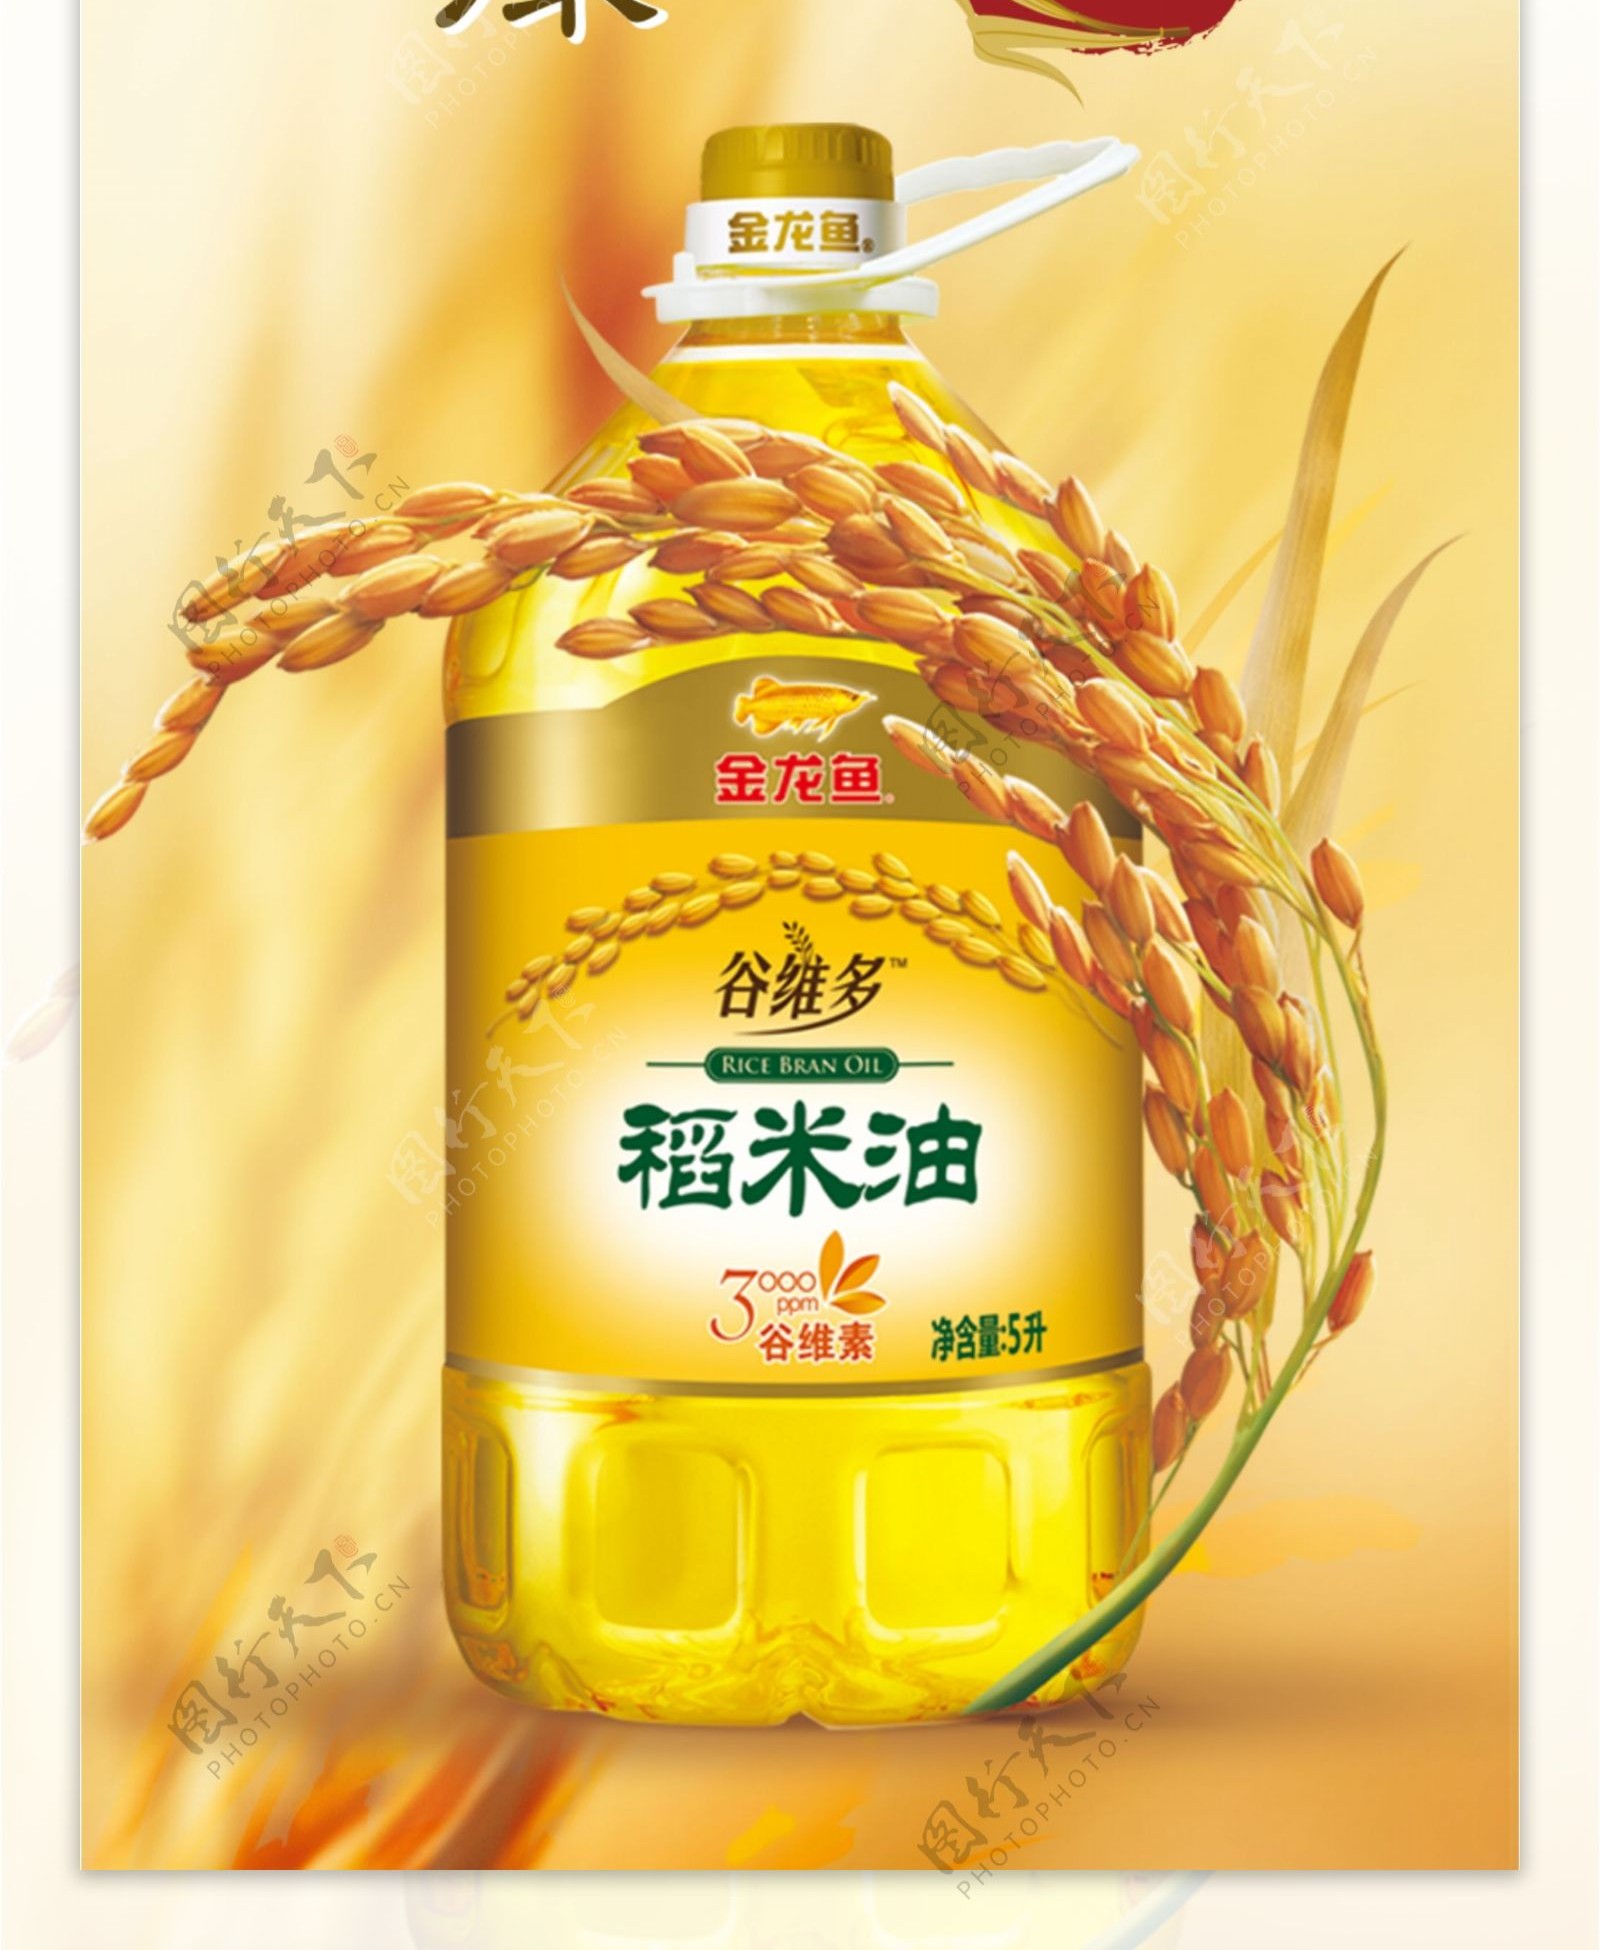 金龙鱼稻米油广告金龙鱼与稻谷合层图片